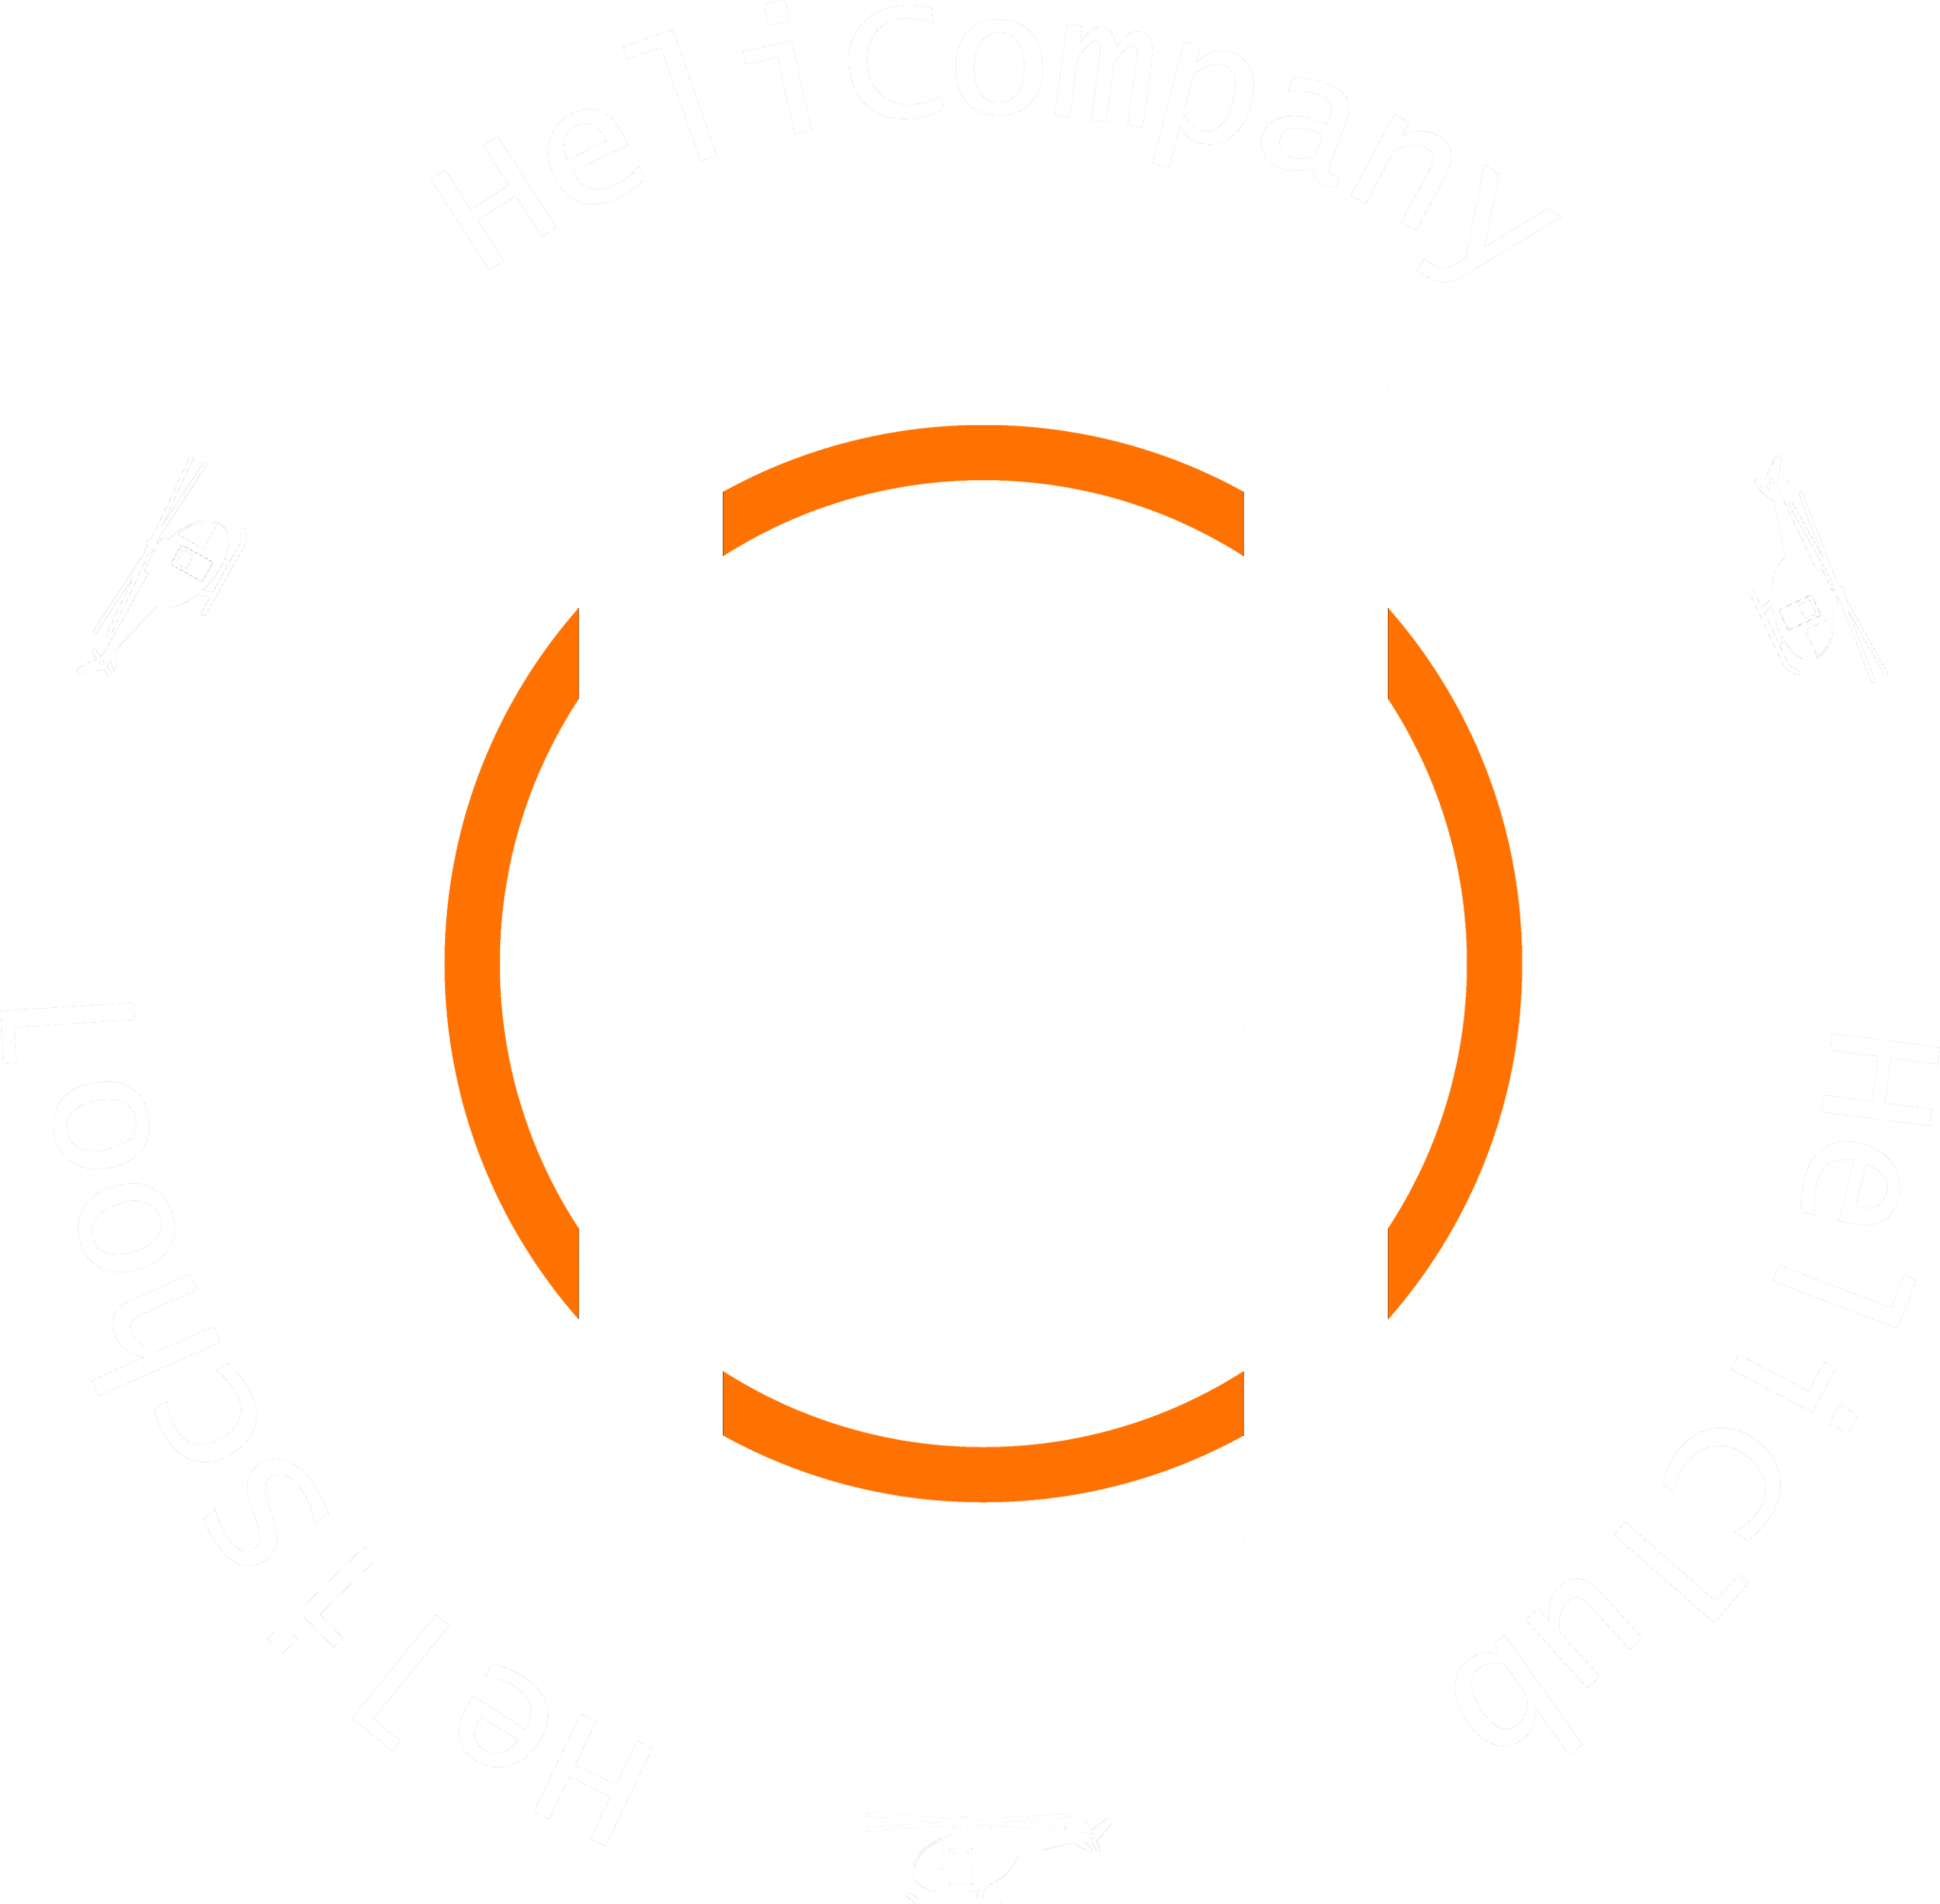 HeliCompany